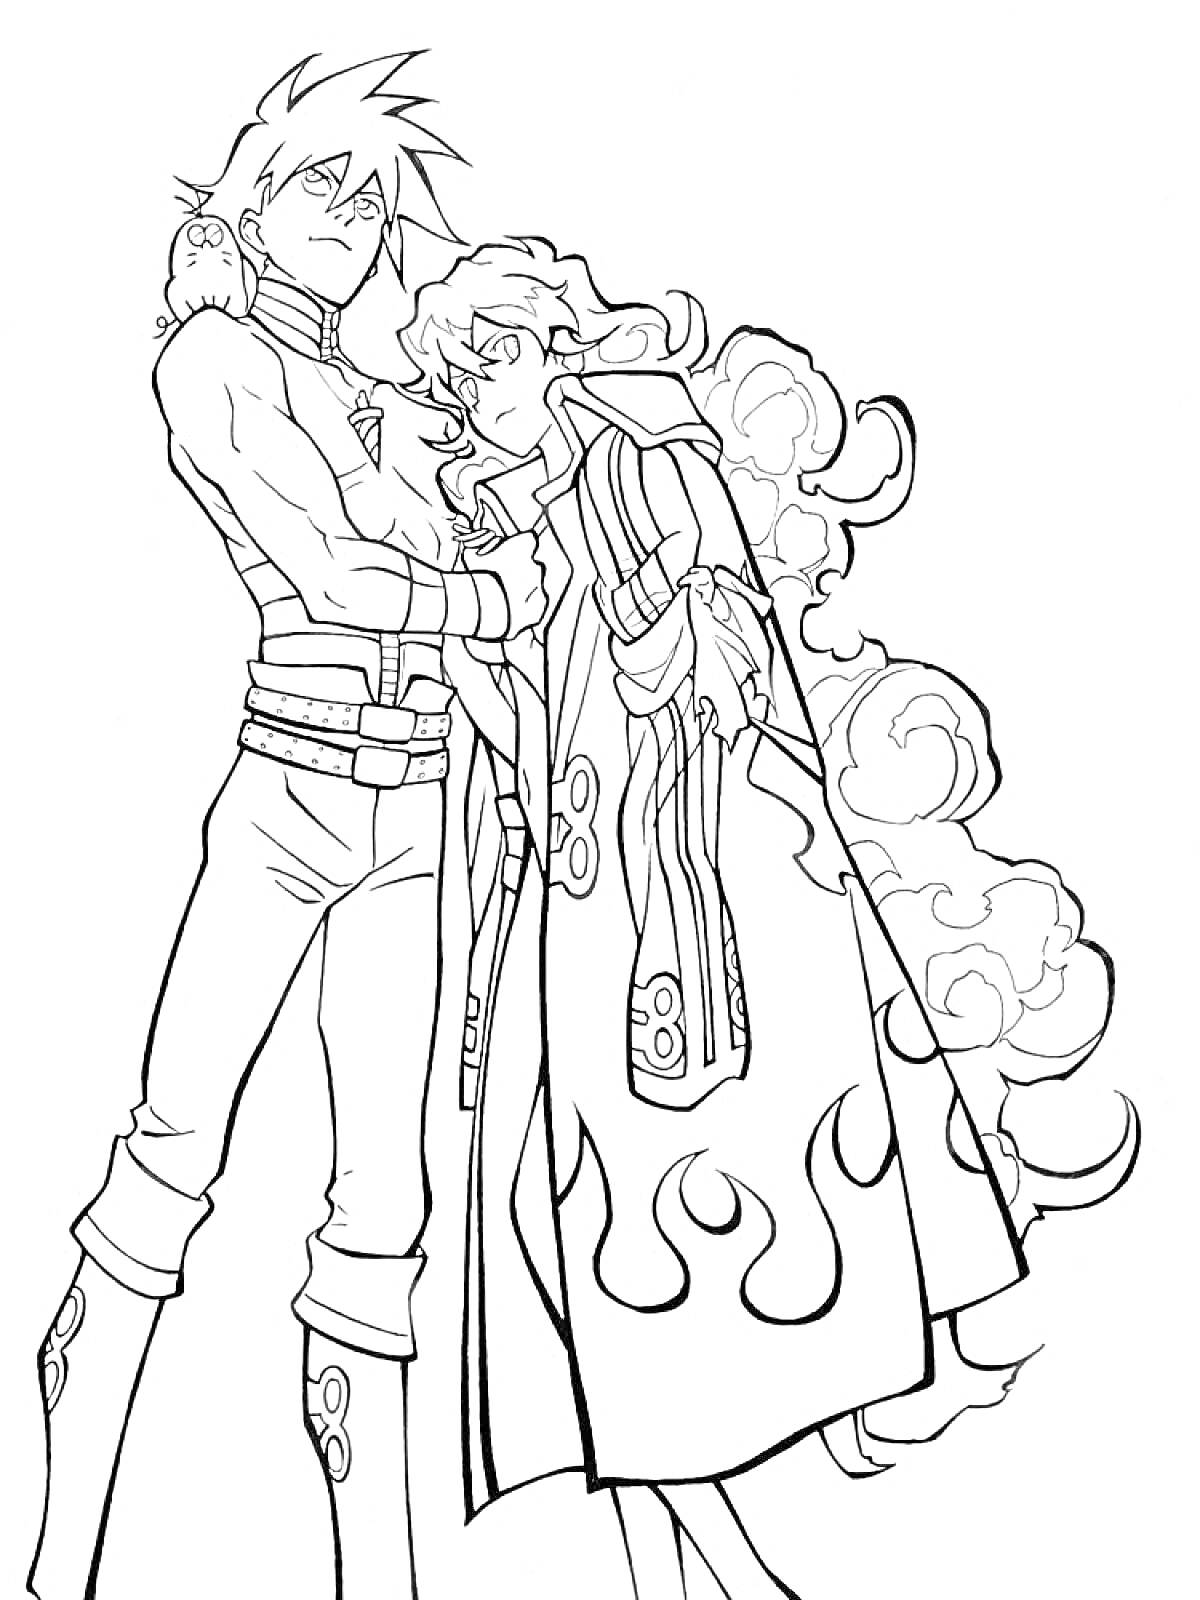 Раскраска Два персонажа из Гуррен-Лаганн, один с открытым торсом, второй в длинном плаще с узором из огня, на плечах кукла-совушка, флаги на заднем плане